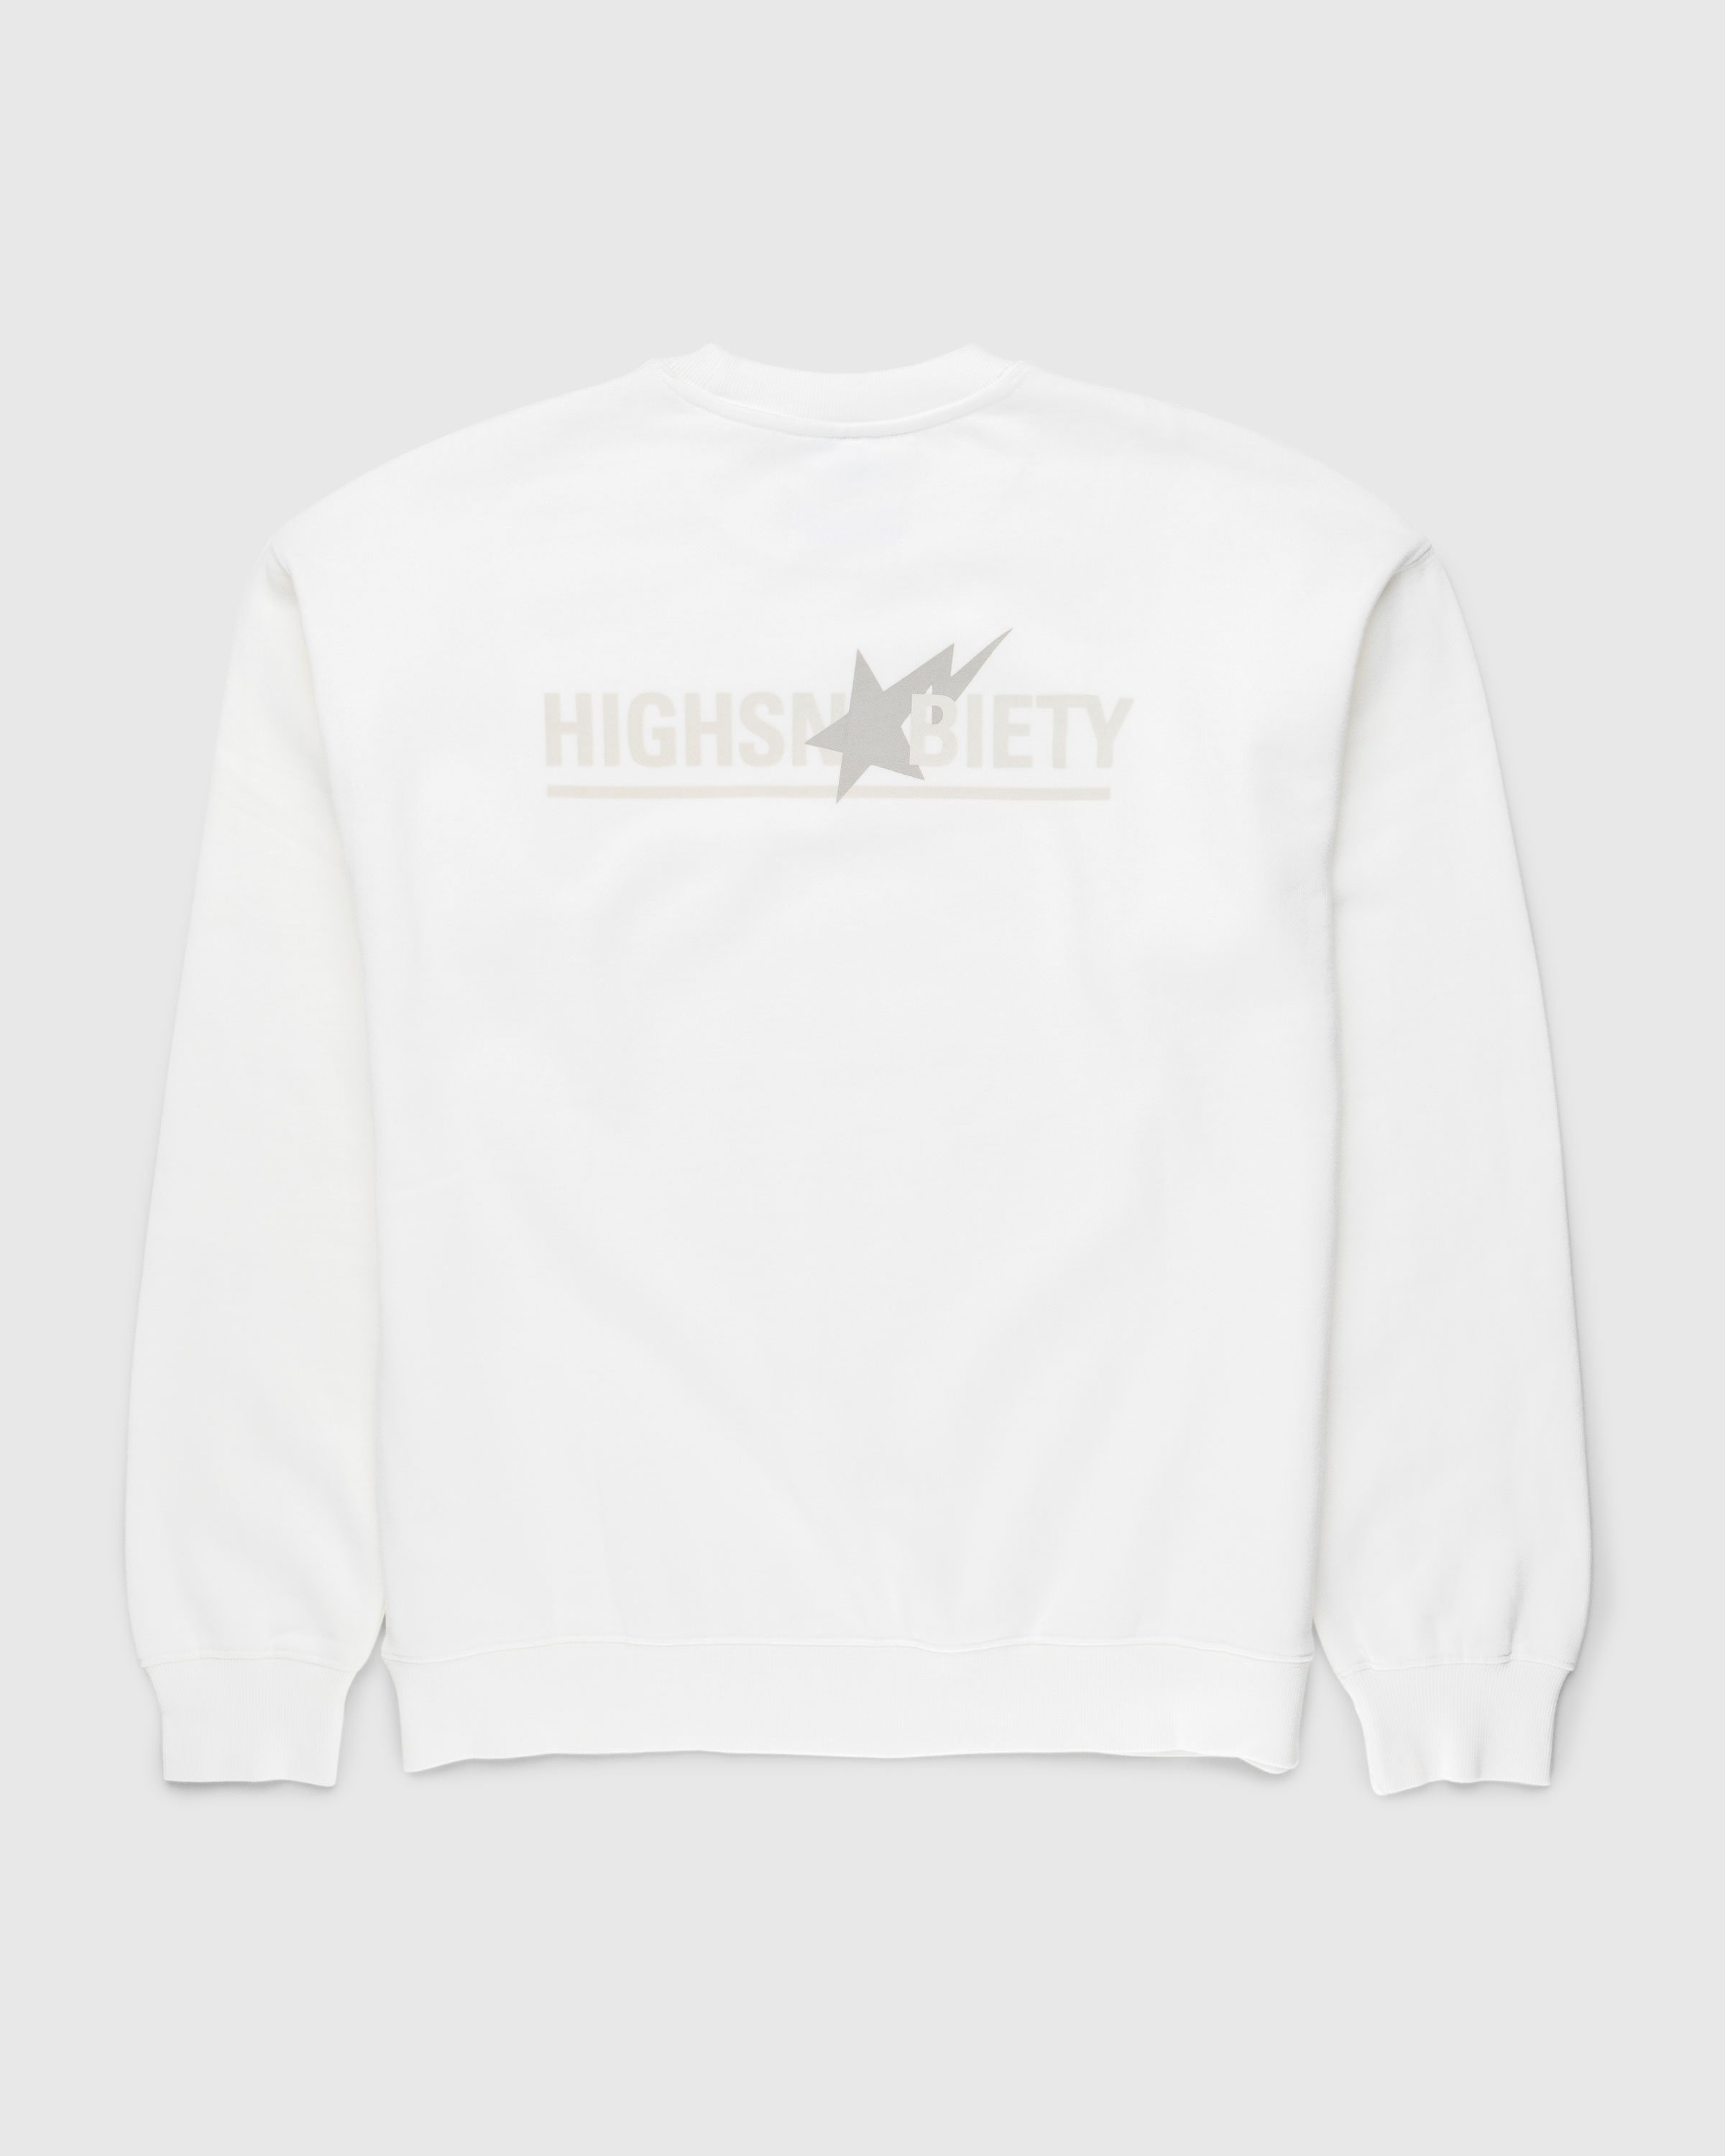 BAPE x Highsnobiety – Heavy Washed Crewneck Ivory - Sweats - Beige - Image 2